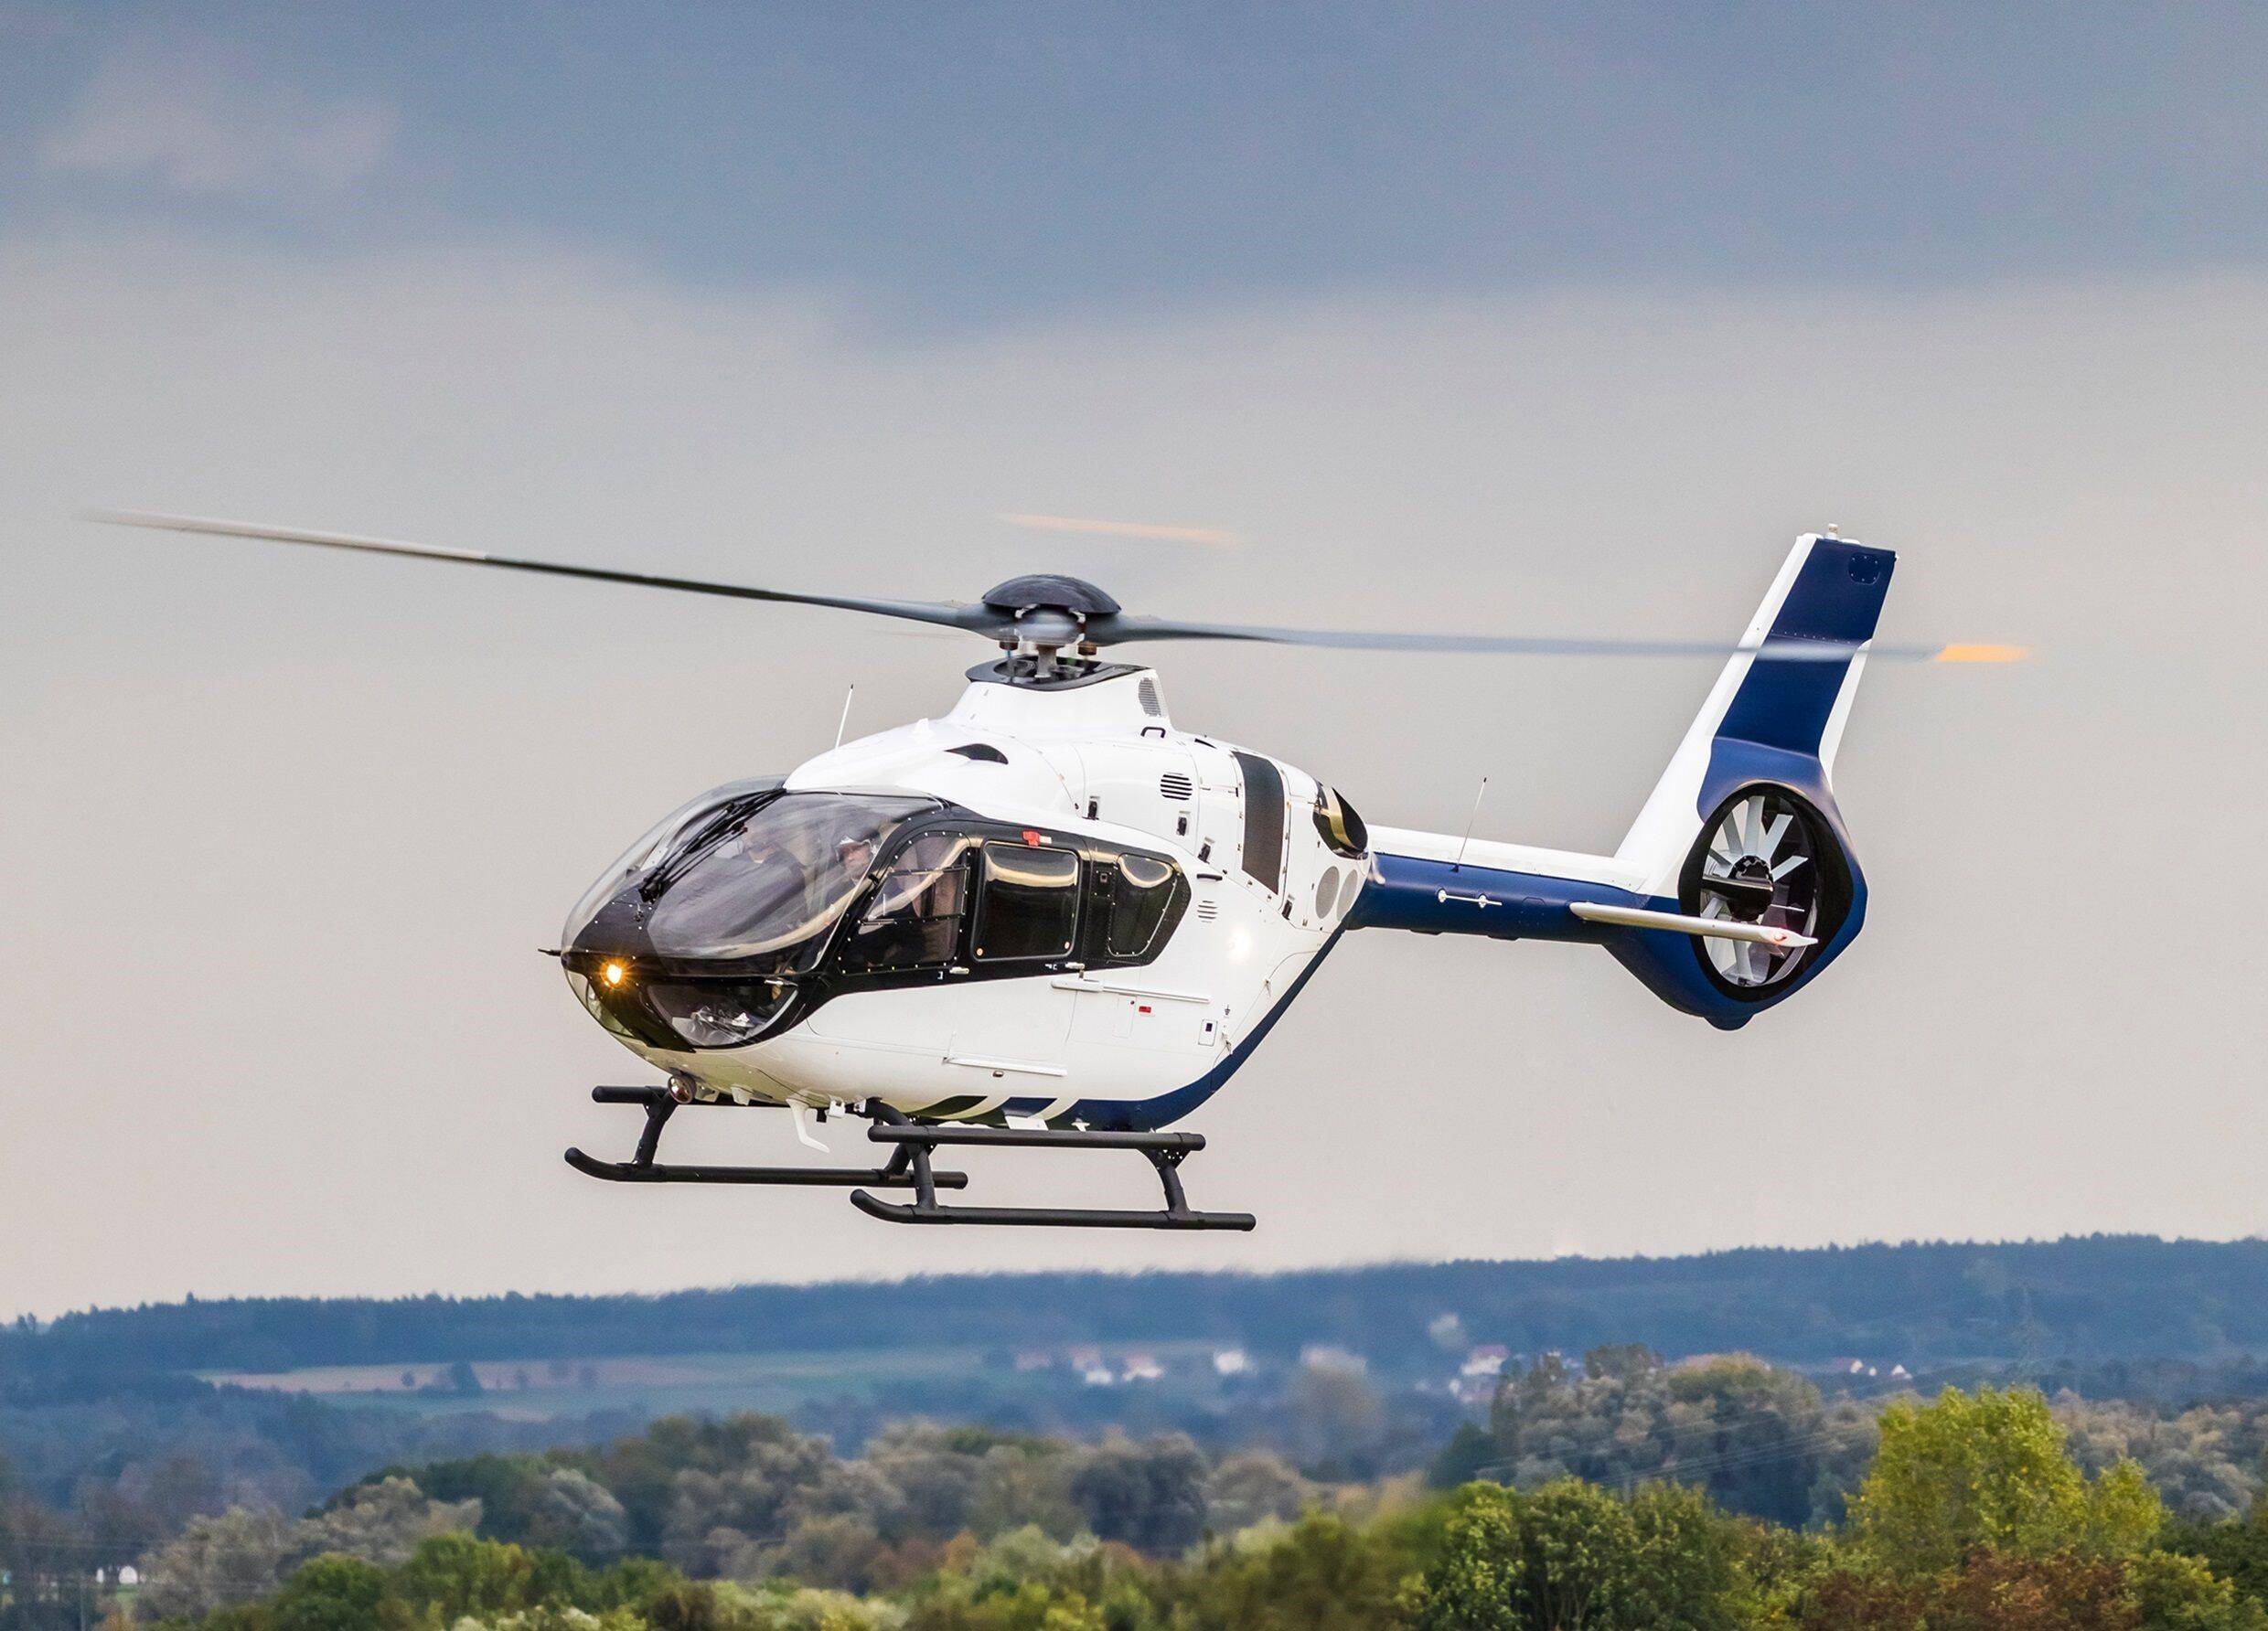 Airbus certifica helicóptero H135 para voar com apenas um piloto